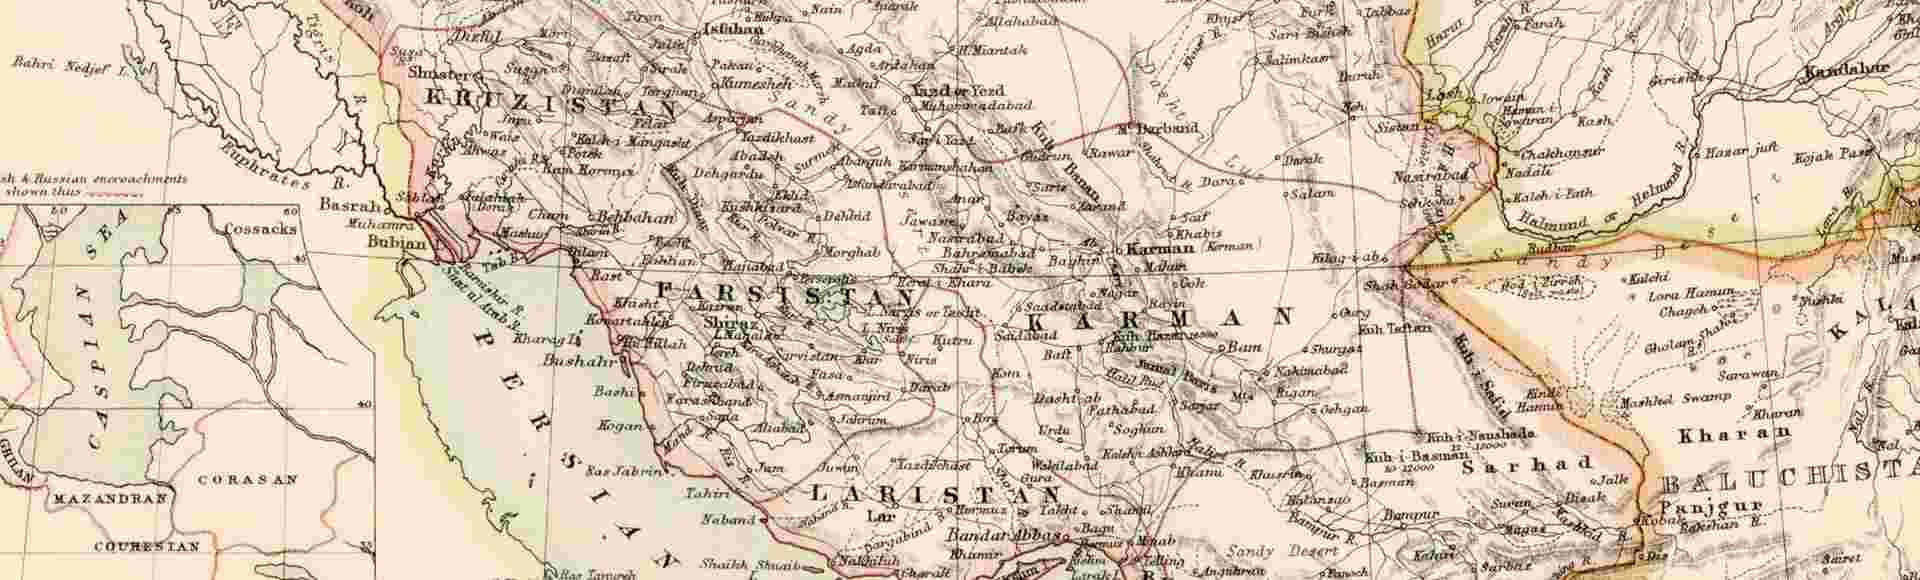 Nineteenth century map of Iran.